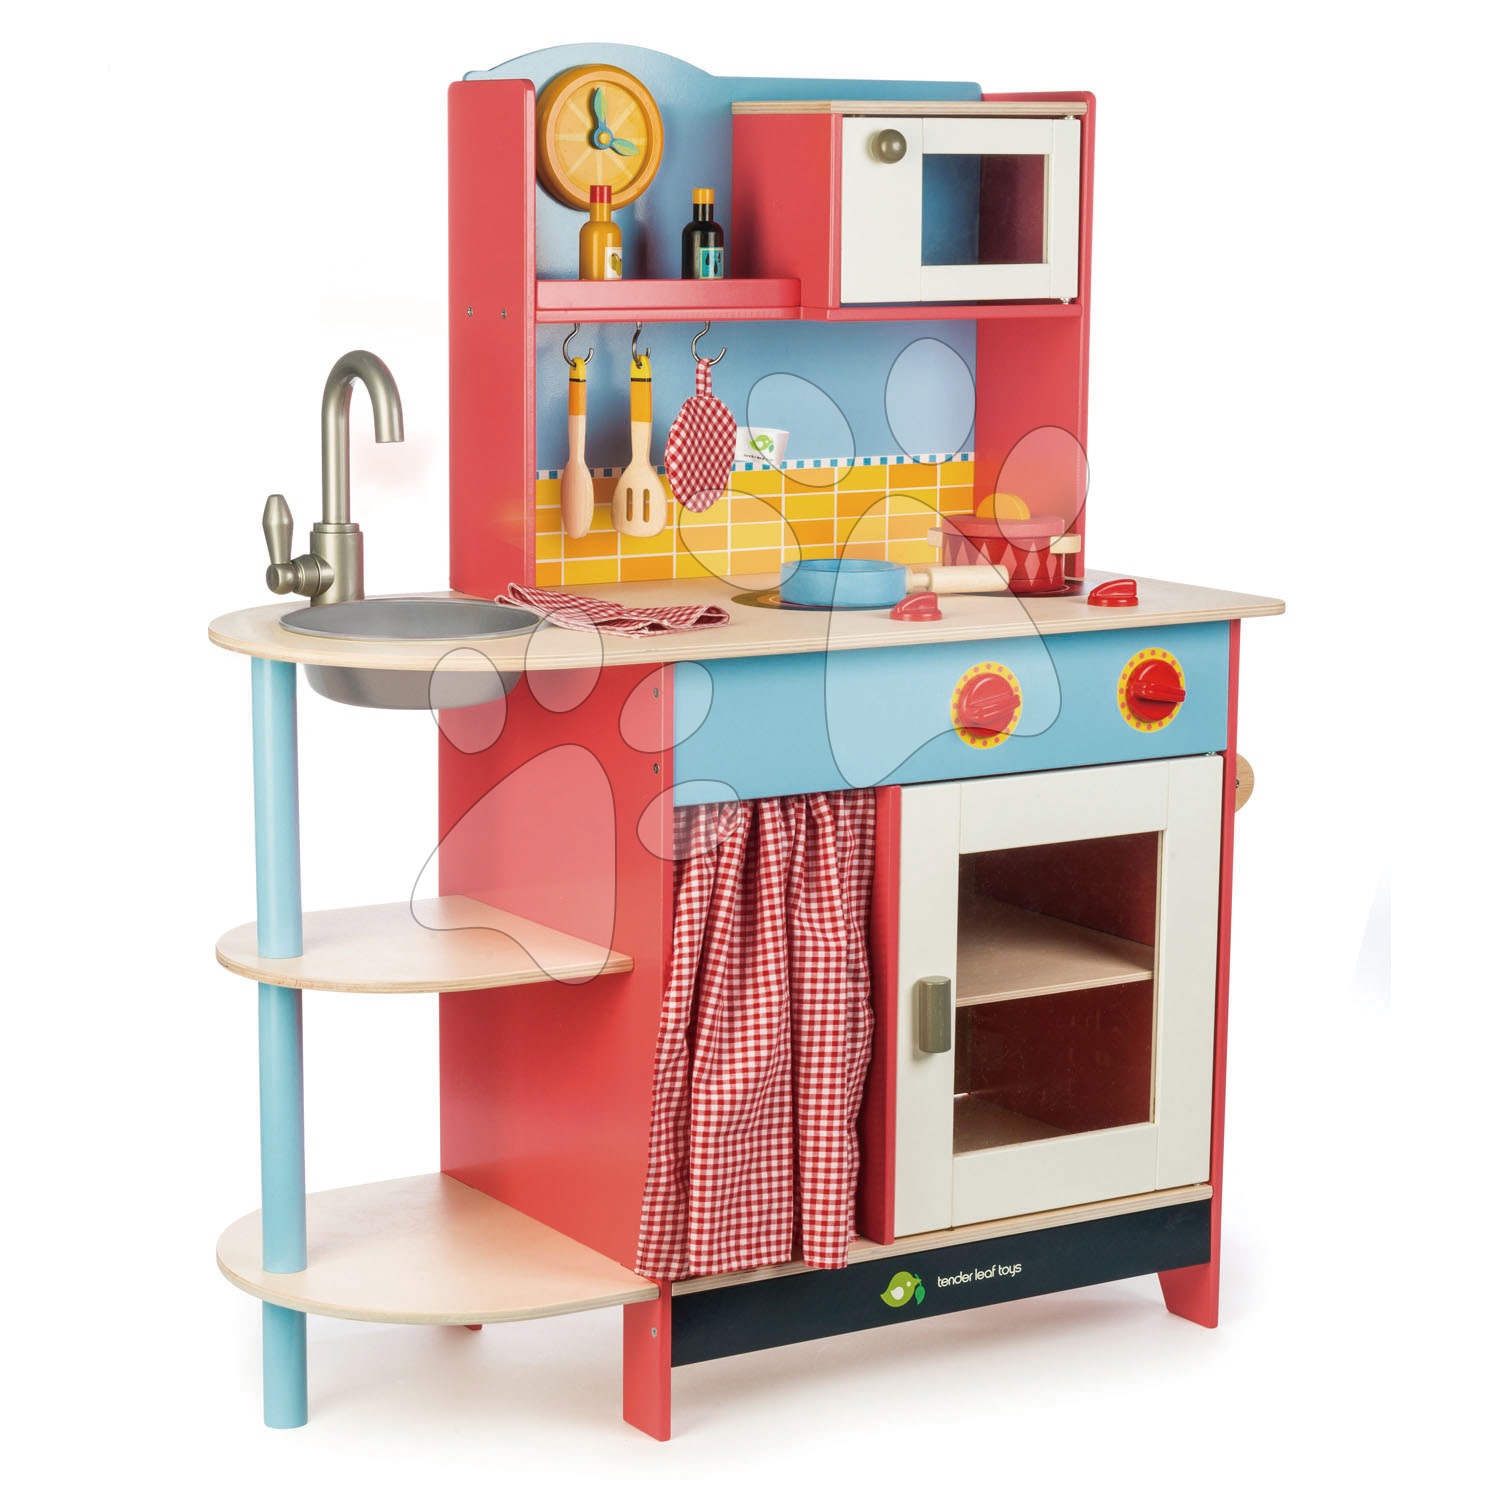 Dřevěné kuchyňky - Dřevěná kuchyňka Grand Kitchen Tender Leaf Toys 10 doplňků s mikrovlnkou a hodinami